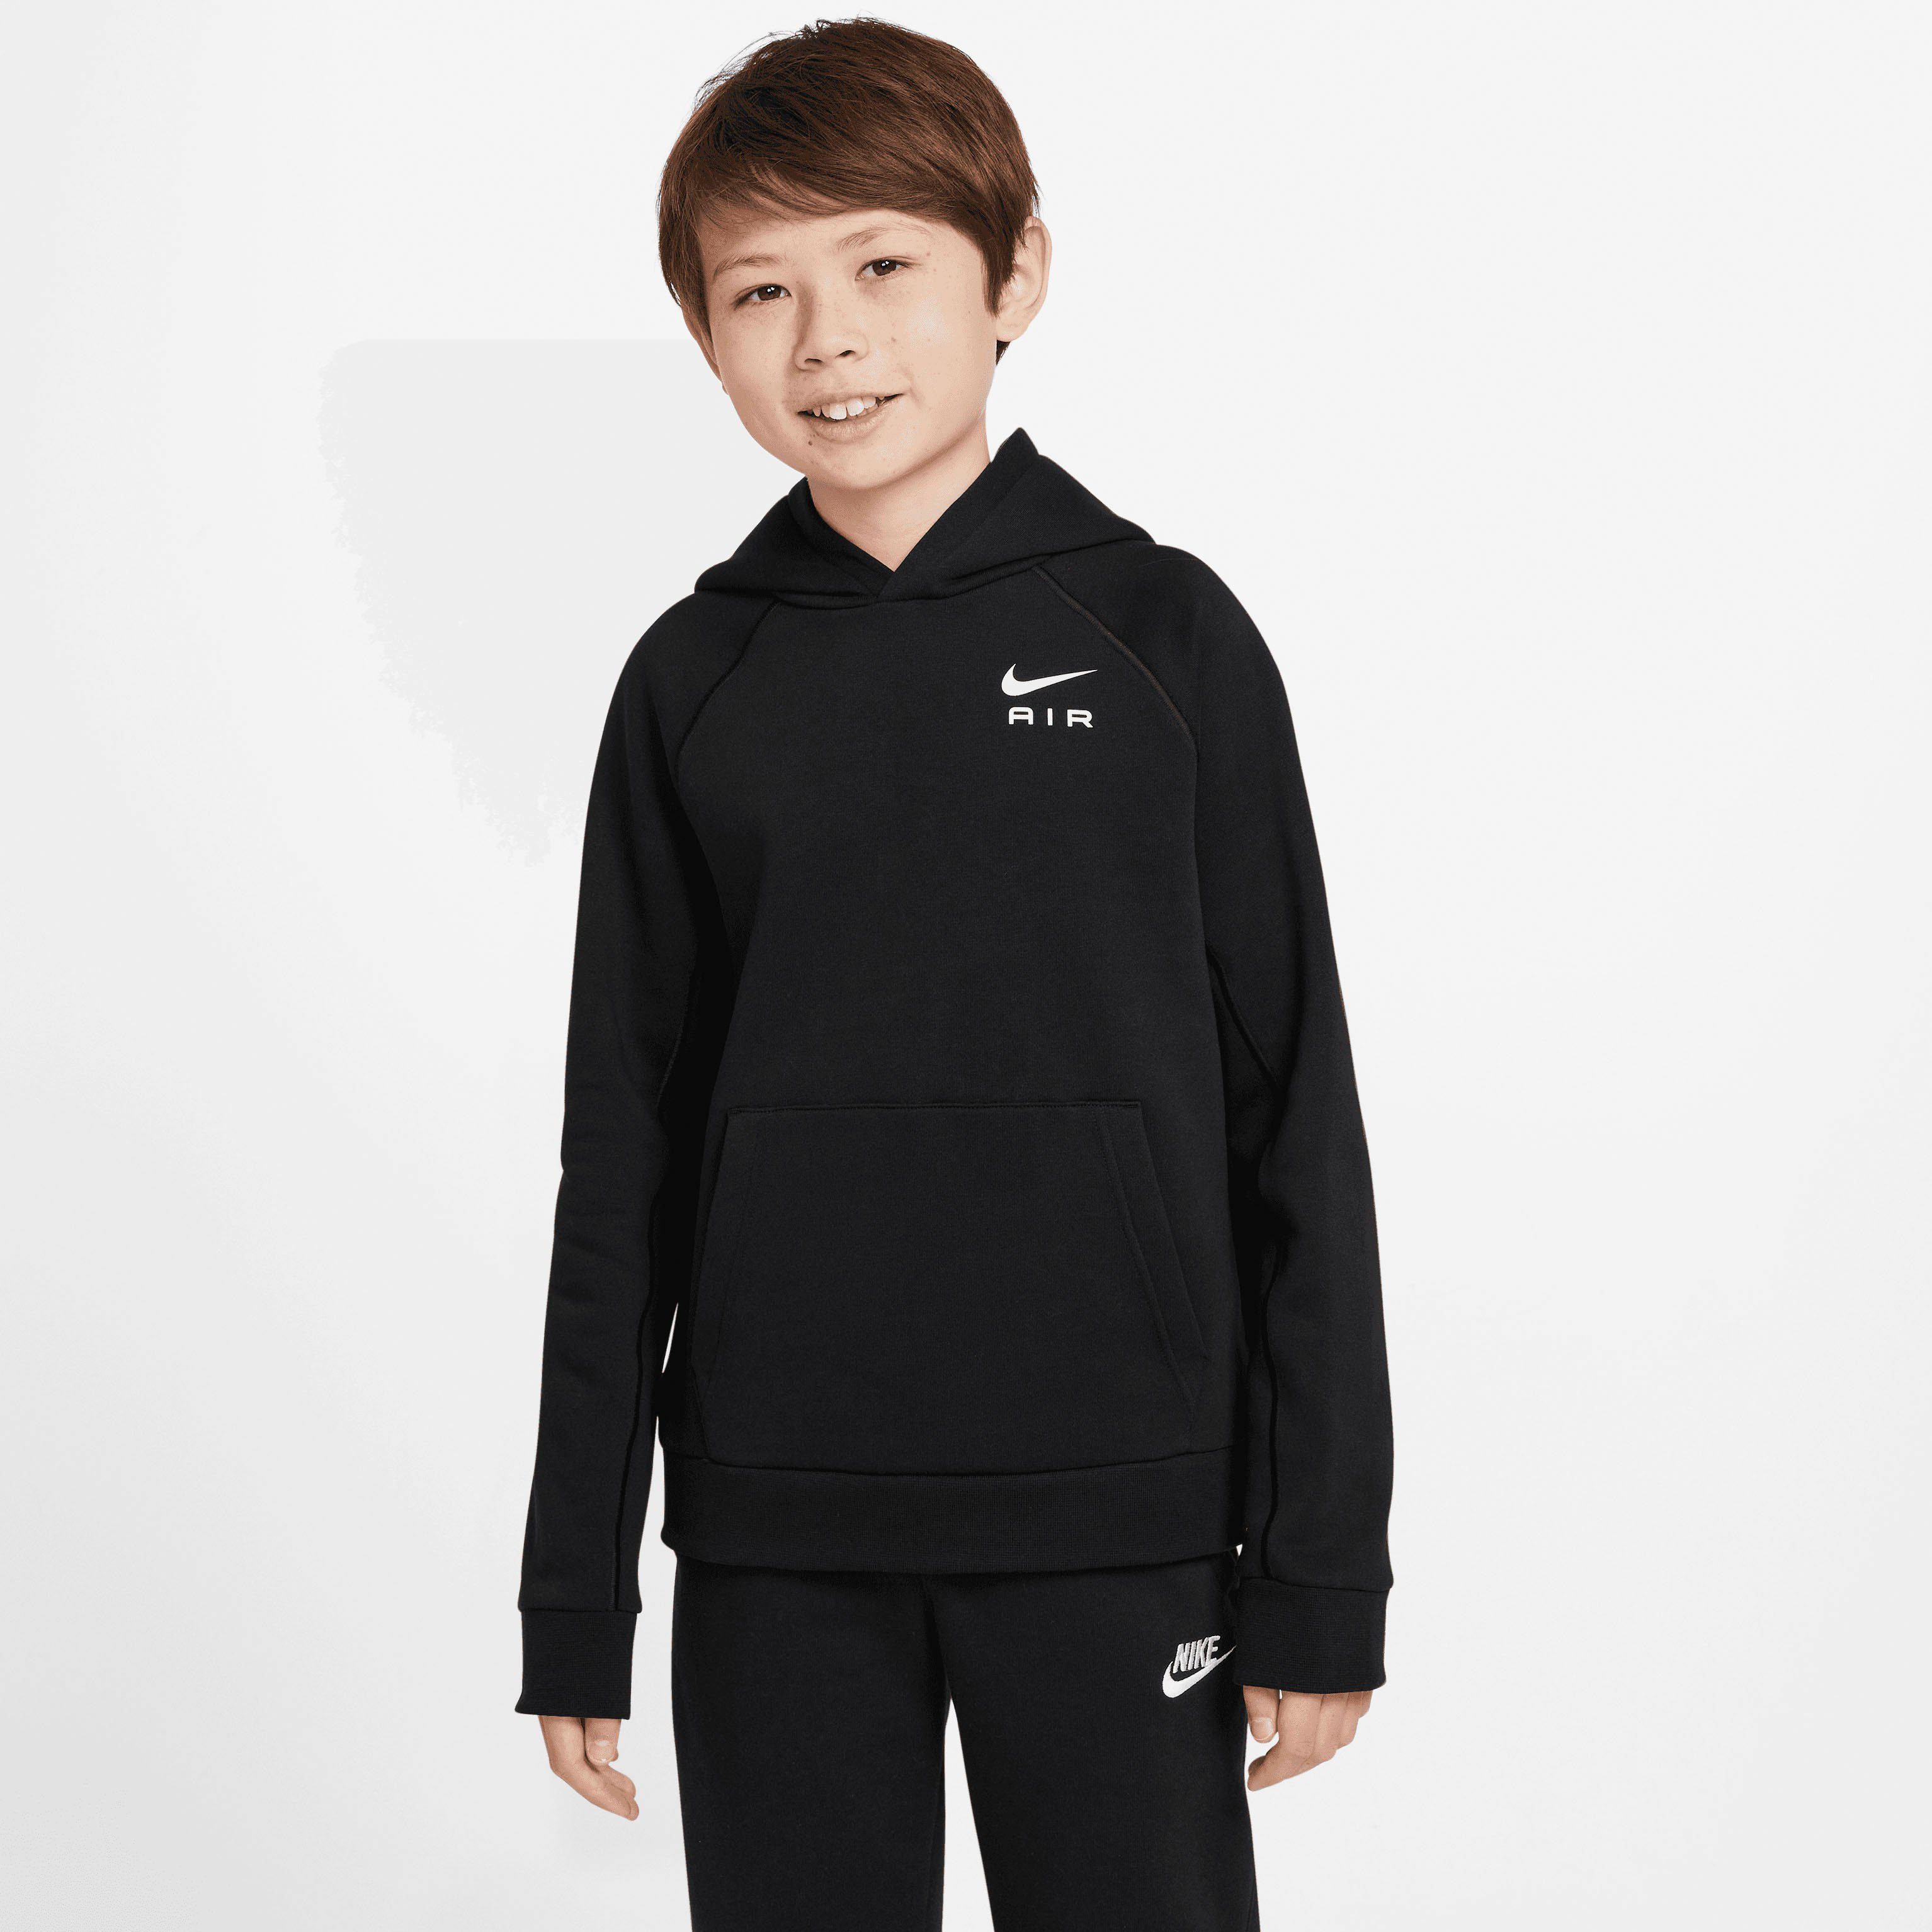 Big Air Kapuzensweatshirt Kids' Sportswear schwarz Hoodie Pullover Nike